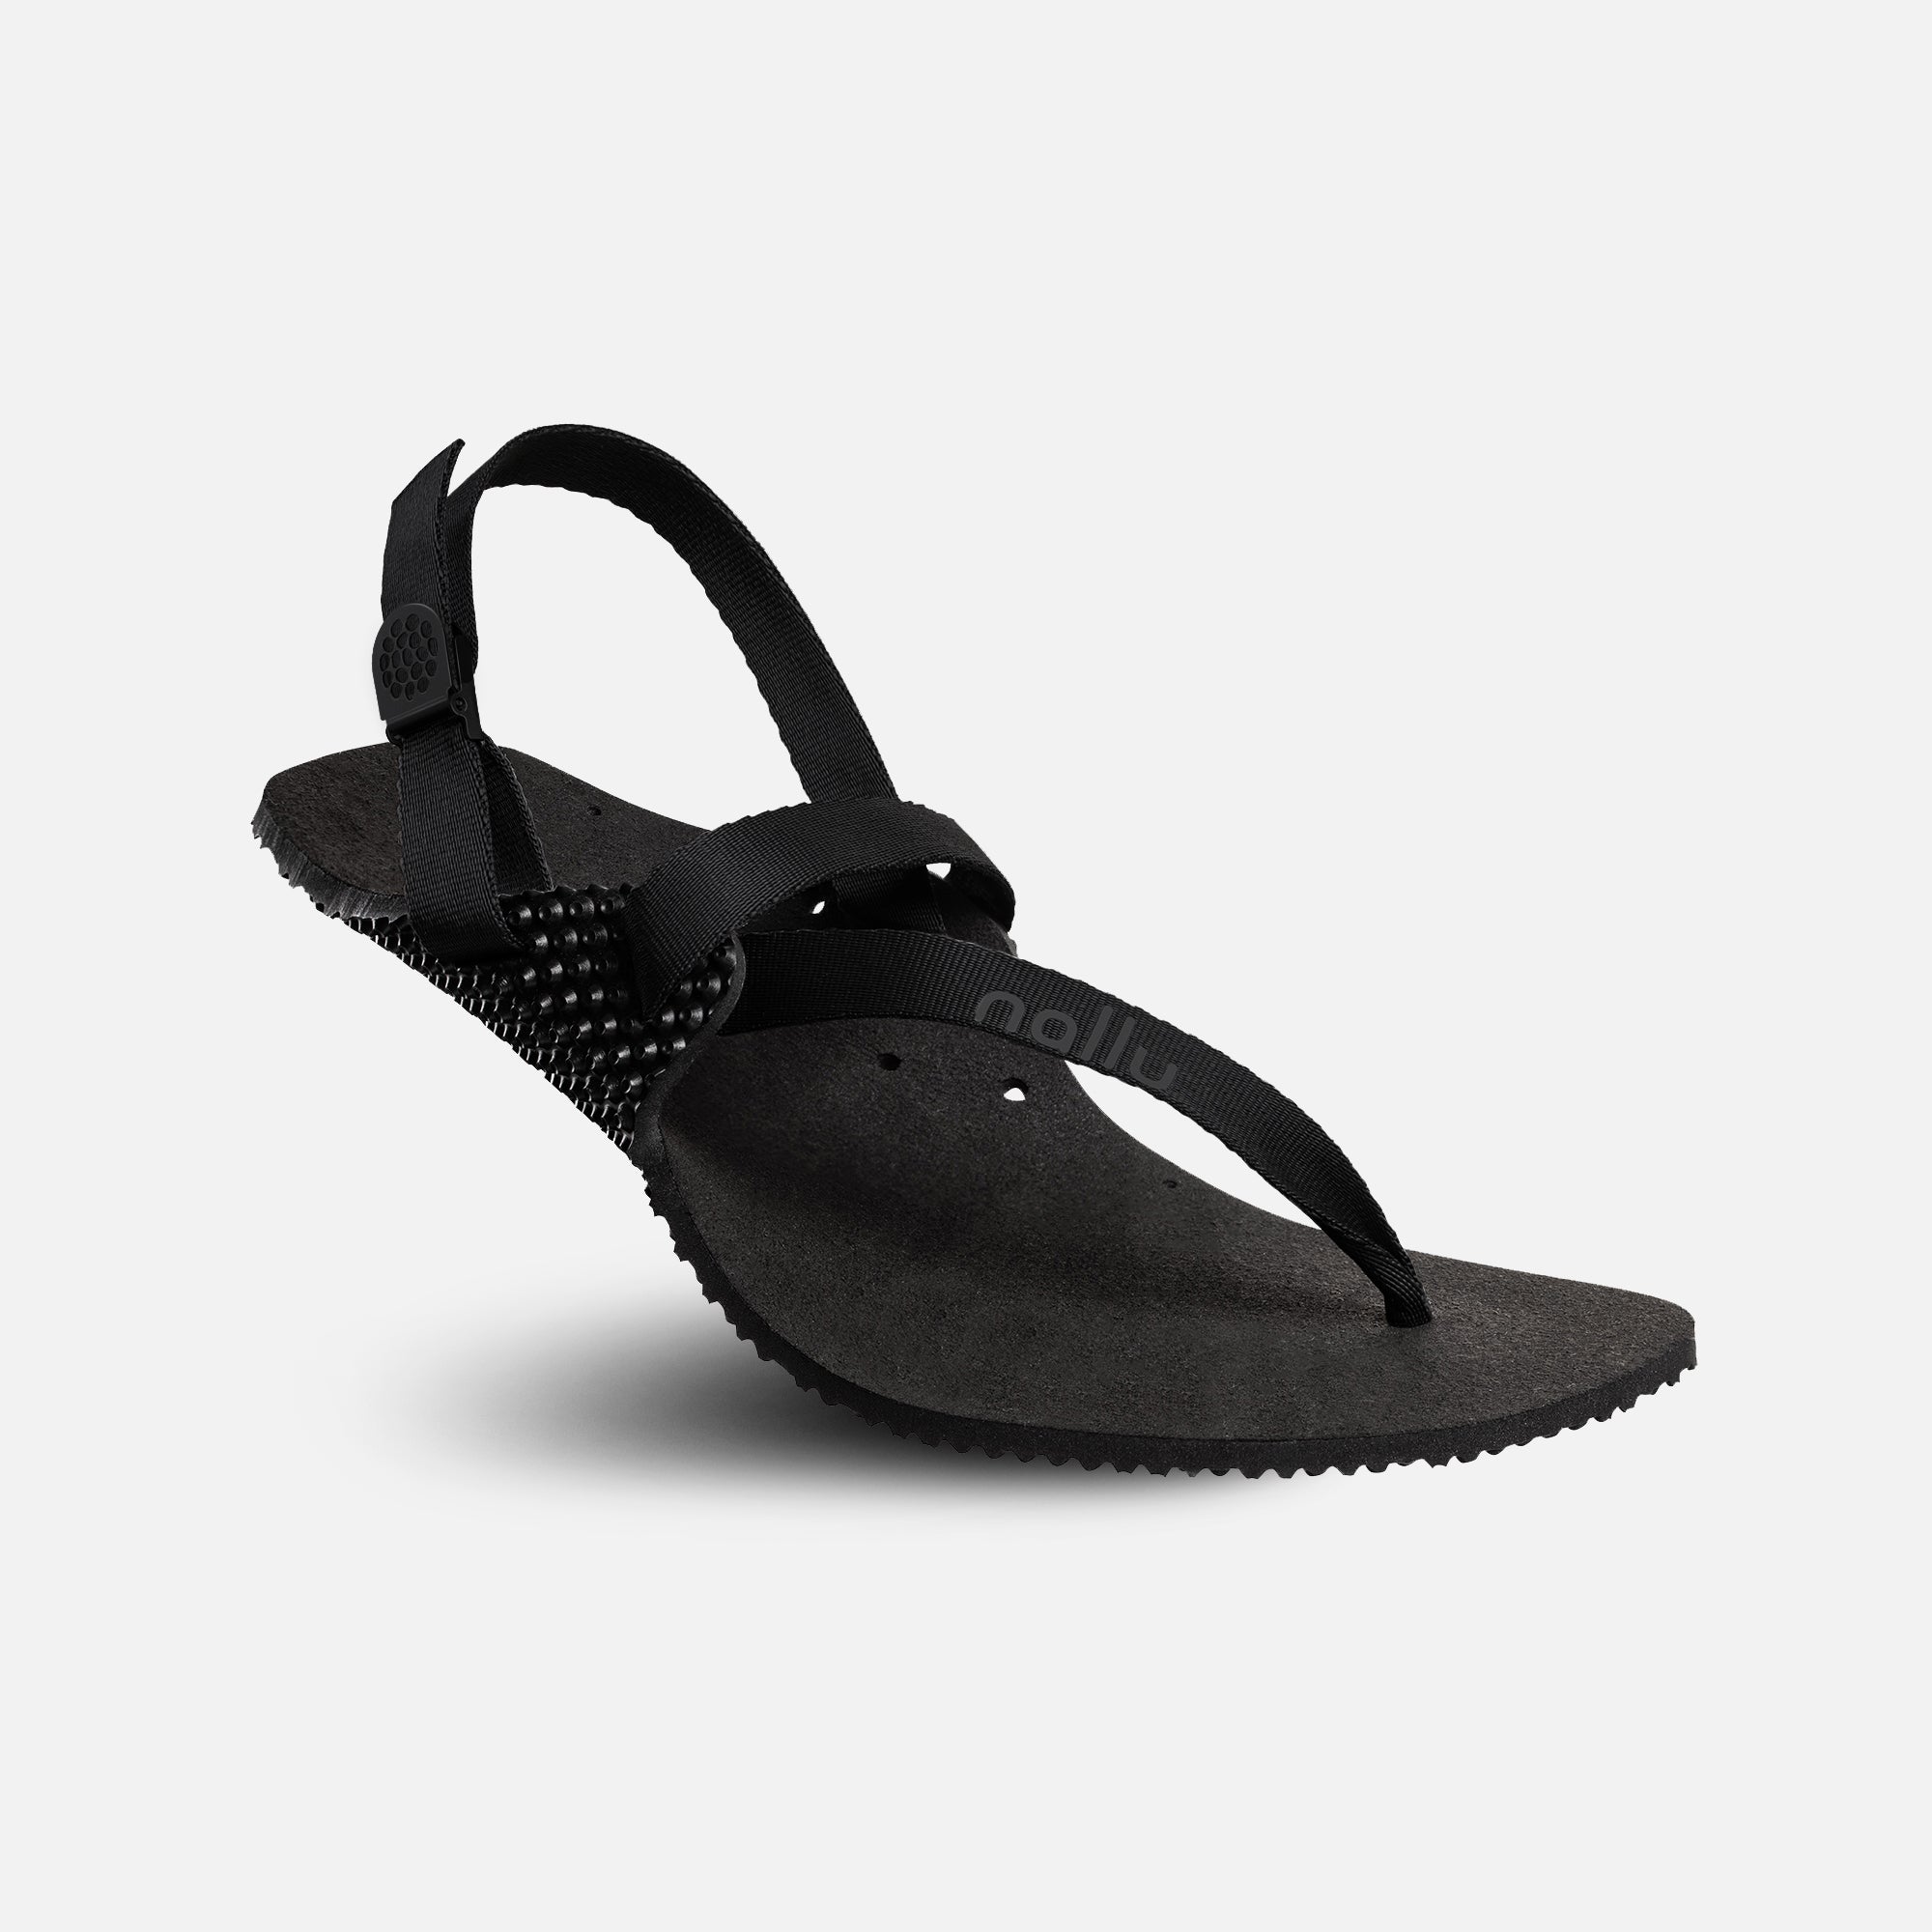 Nallu Explorer barfods sandaler til kvinder og mænd i farven black, vinklet